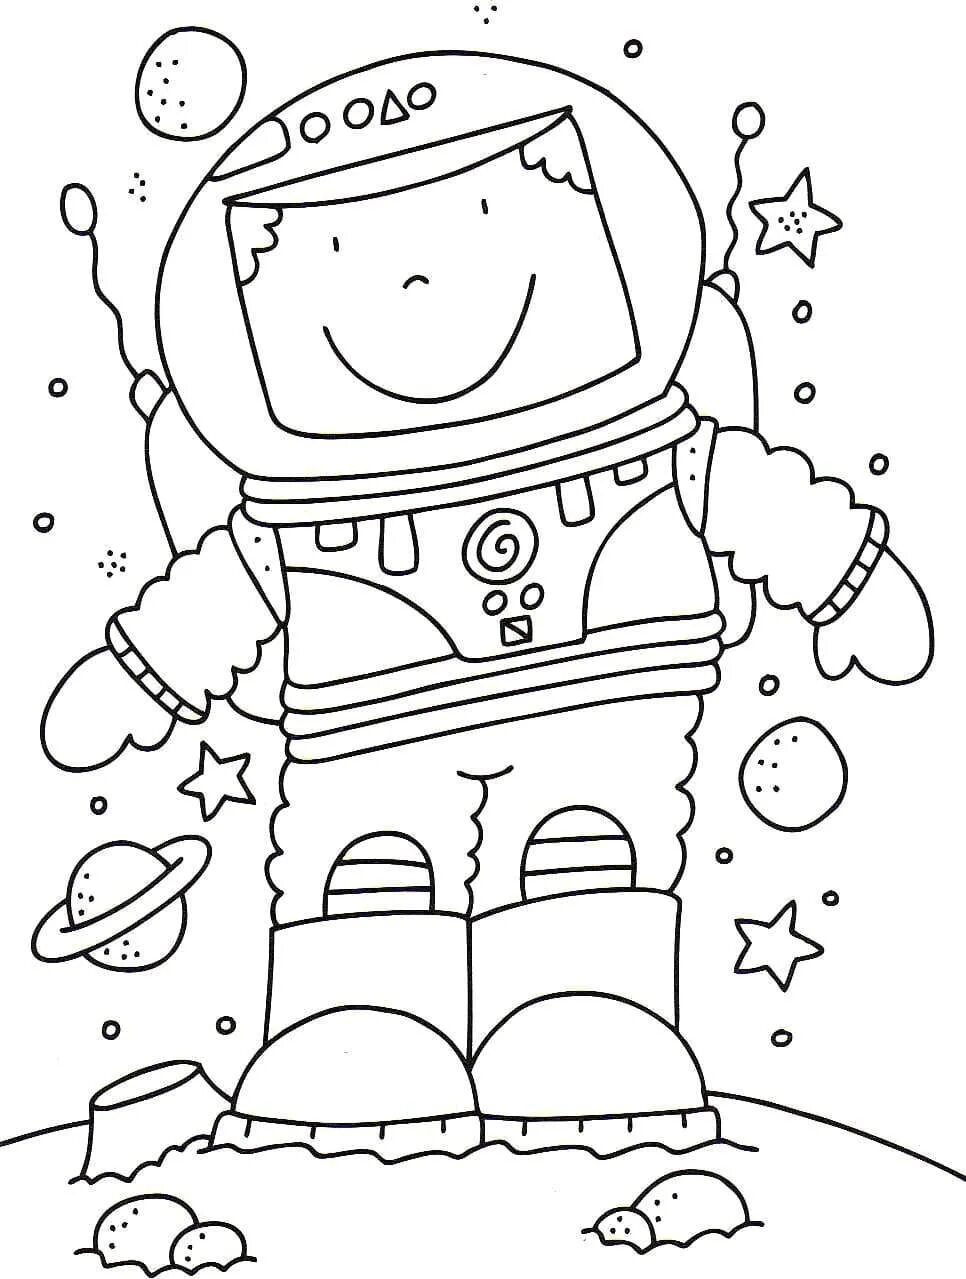 Космос раскраска для детей. Раскраска. В космосе. Космические раскраски для детей. Детские раскраски космос. Шаблон космонавта для поделки ко дню космонавтики